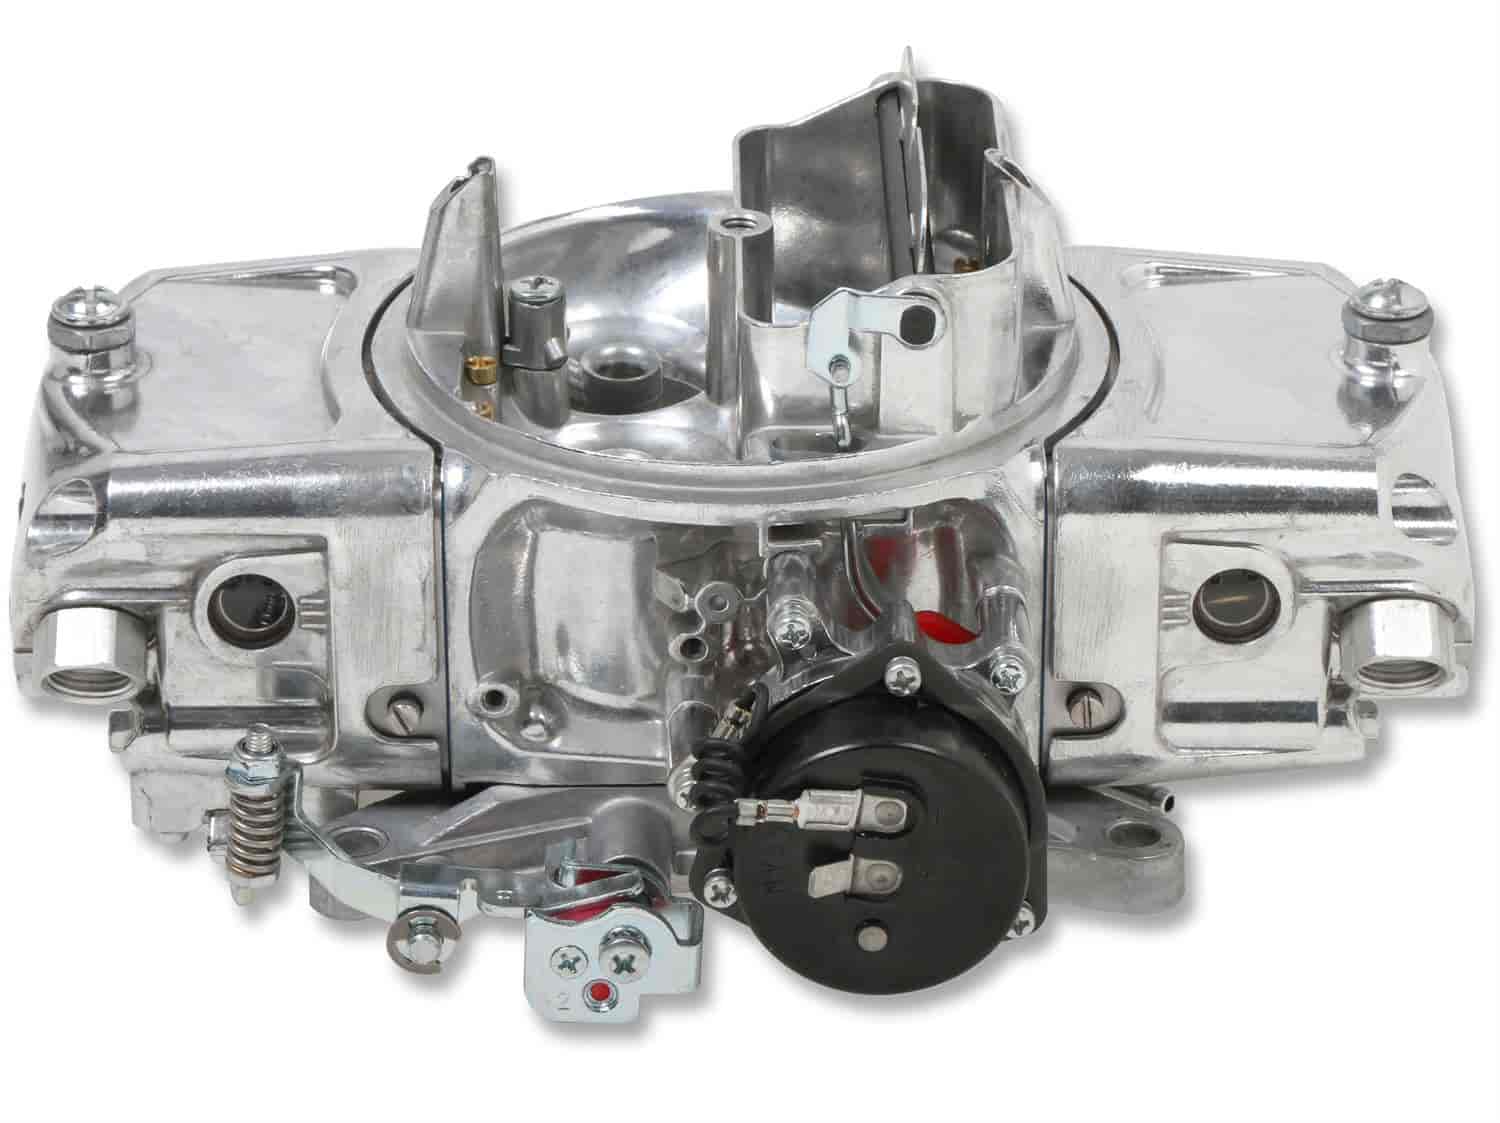 850 CFM Road Demon Carburetor [Electric Choke, Mechanical Secondaries]